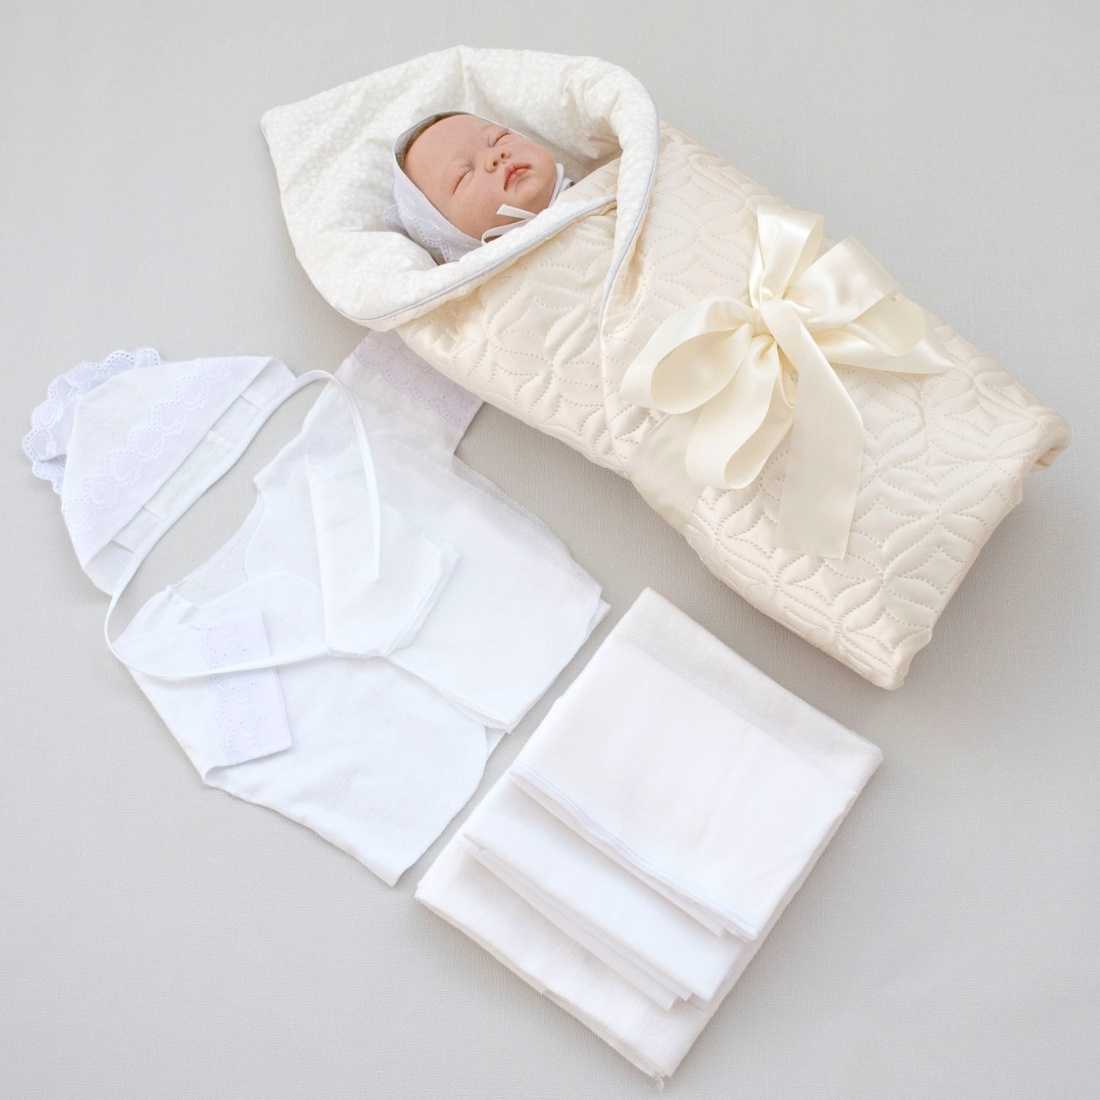 Как связать спицами теплые и практичные конверты для новорожденных